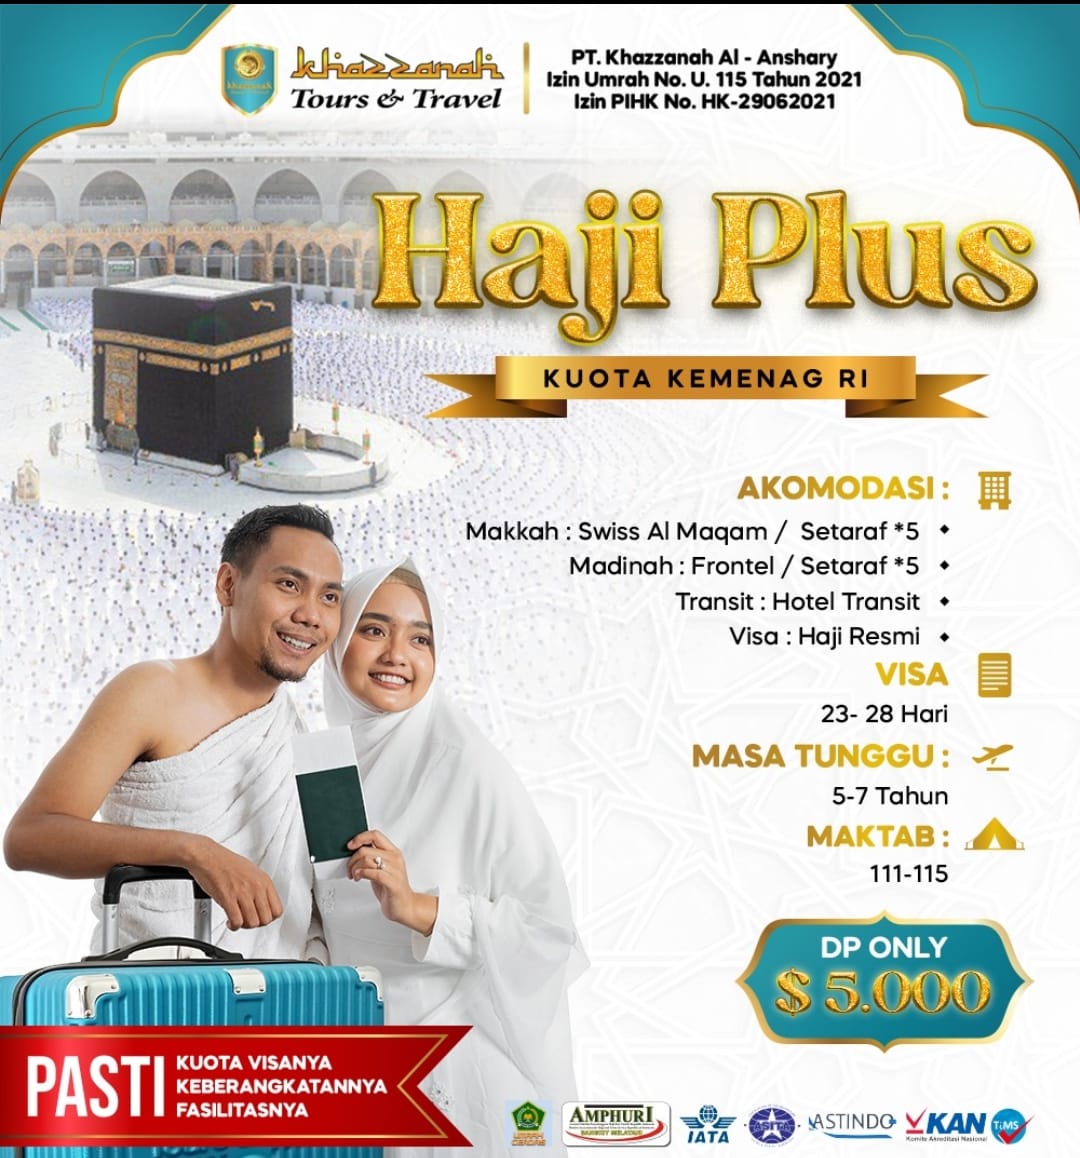 Promo Potongan Harga Haji Khusus Kuota Kemenag RI Termurah